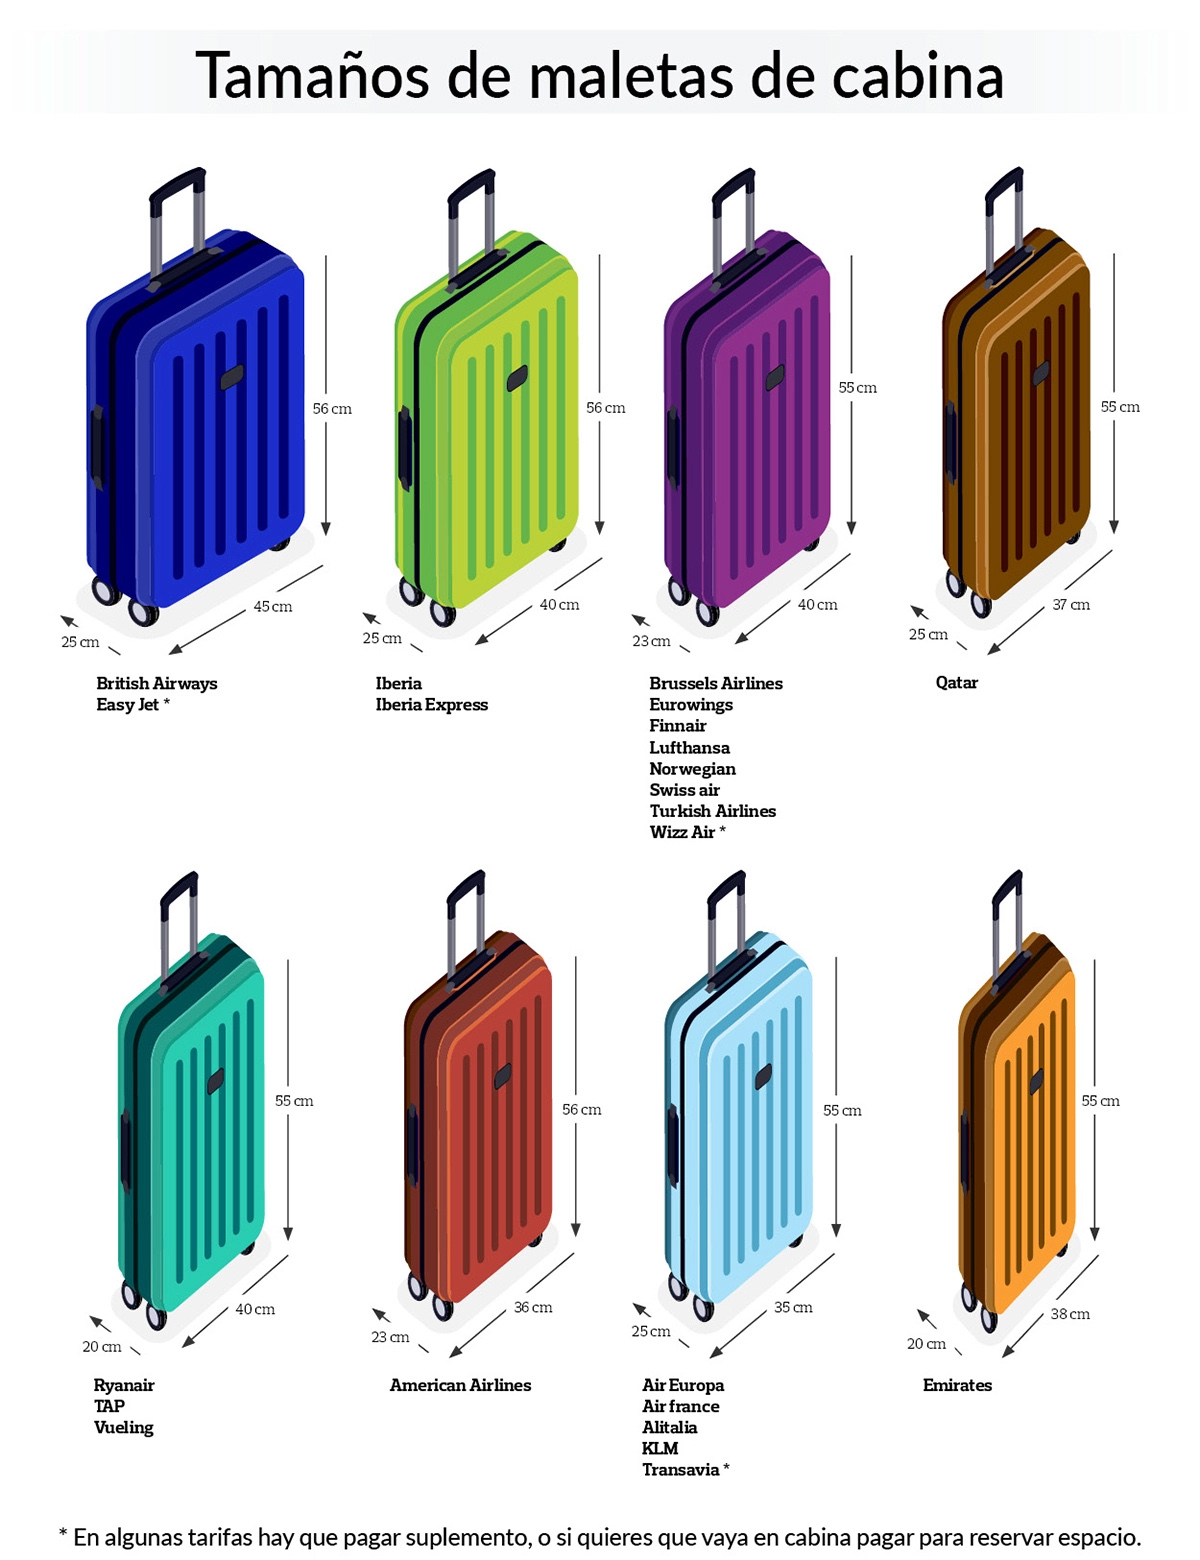 El equipaje de mano permitido por cada compañía aérea, al detalle |  Noticias de Aerolíneas | Revista de turismo Preferente.com